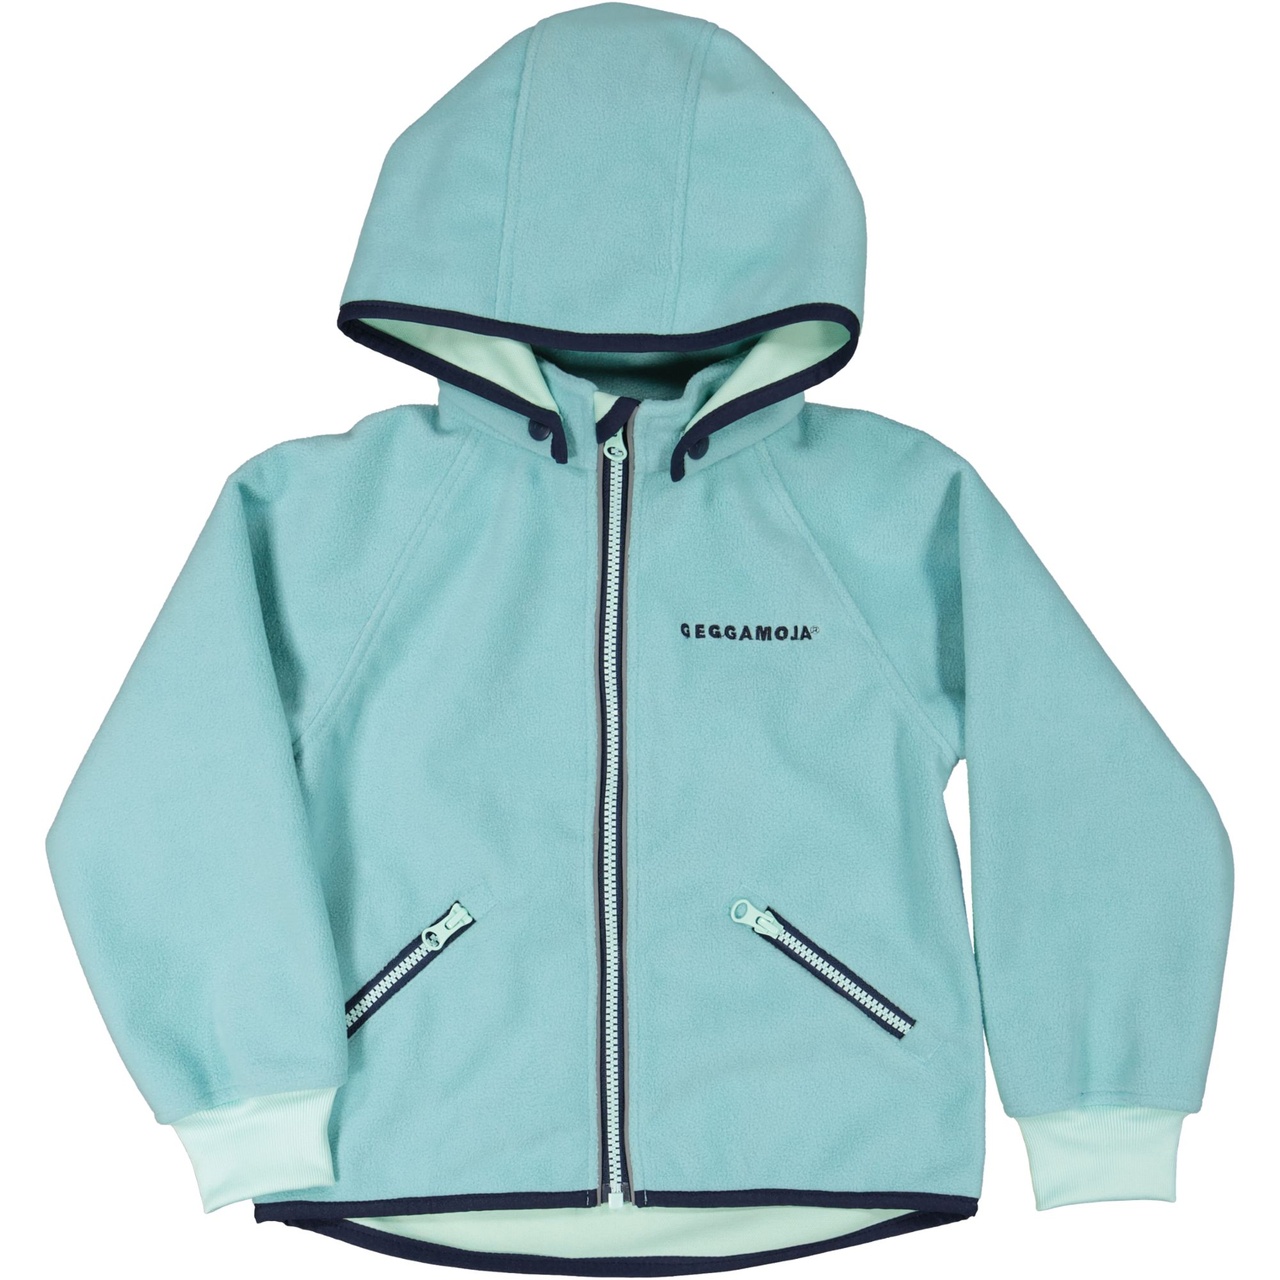 Wind fleece jacket Turquoise 110/116